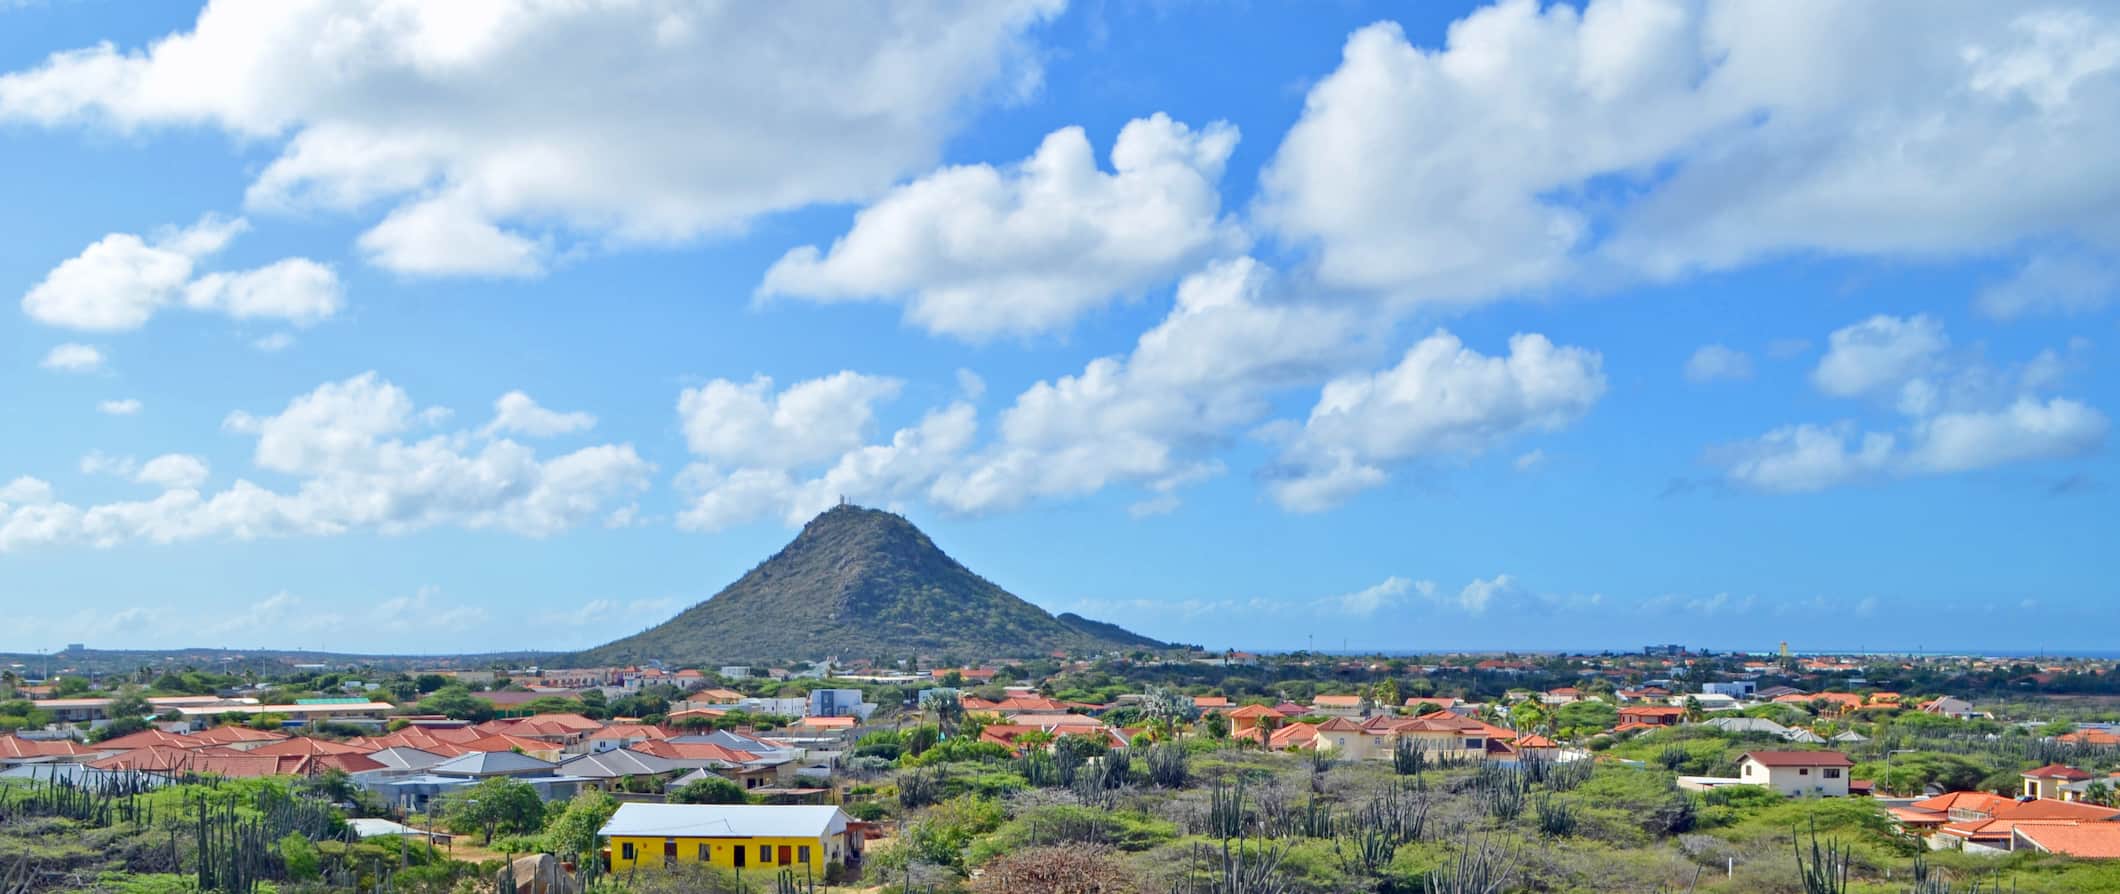 Lonely Hill Huibieberg, elevand o-se à distância em Aruba